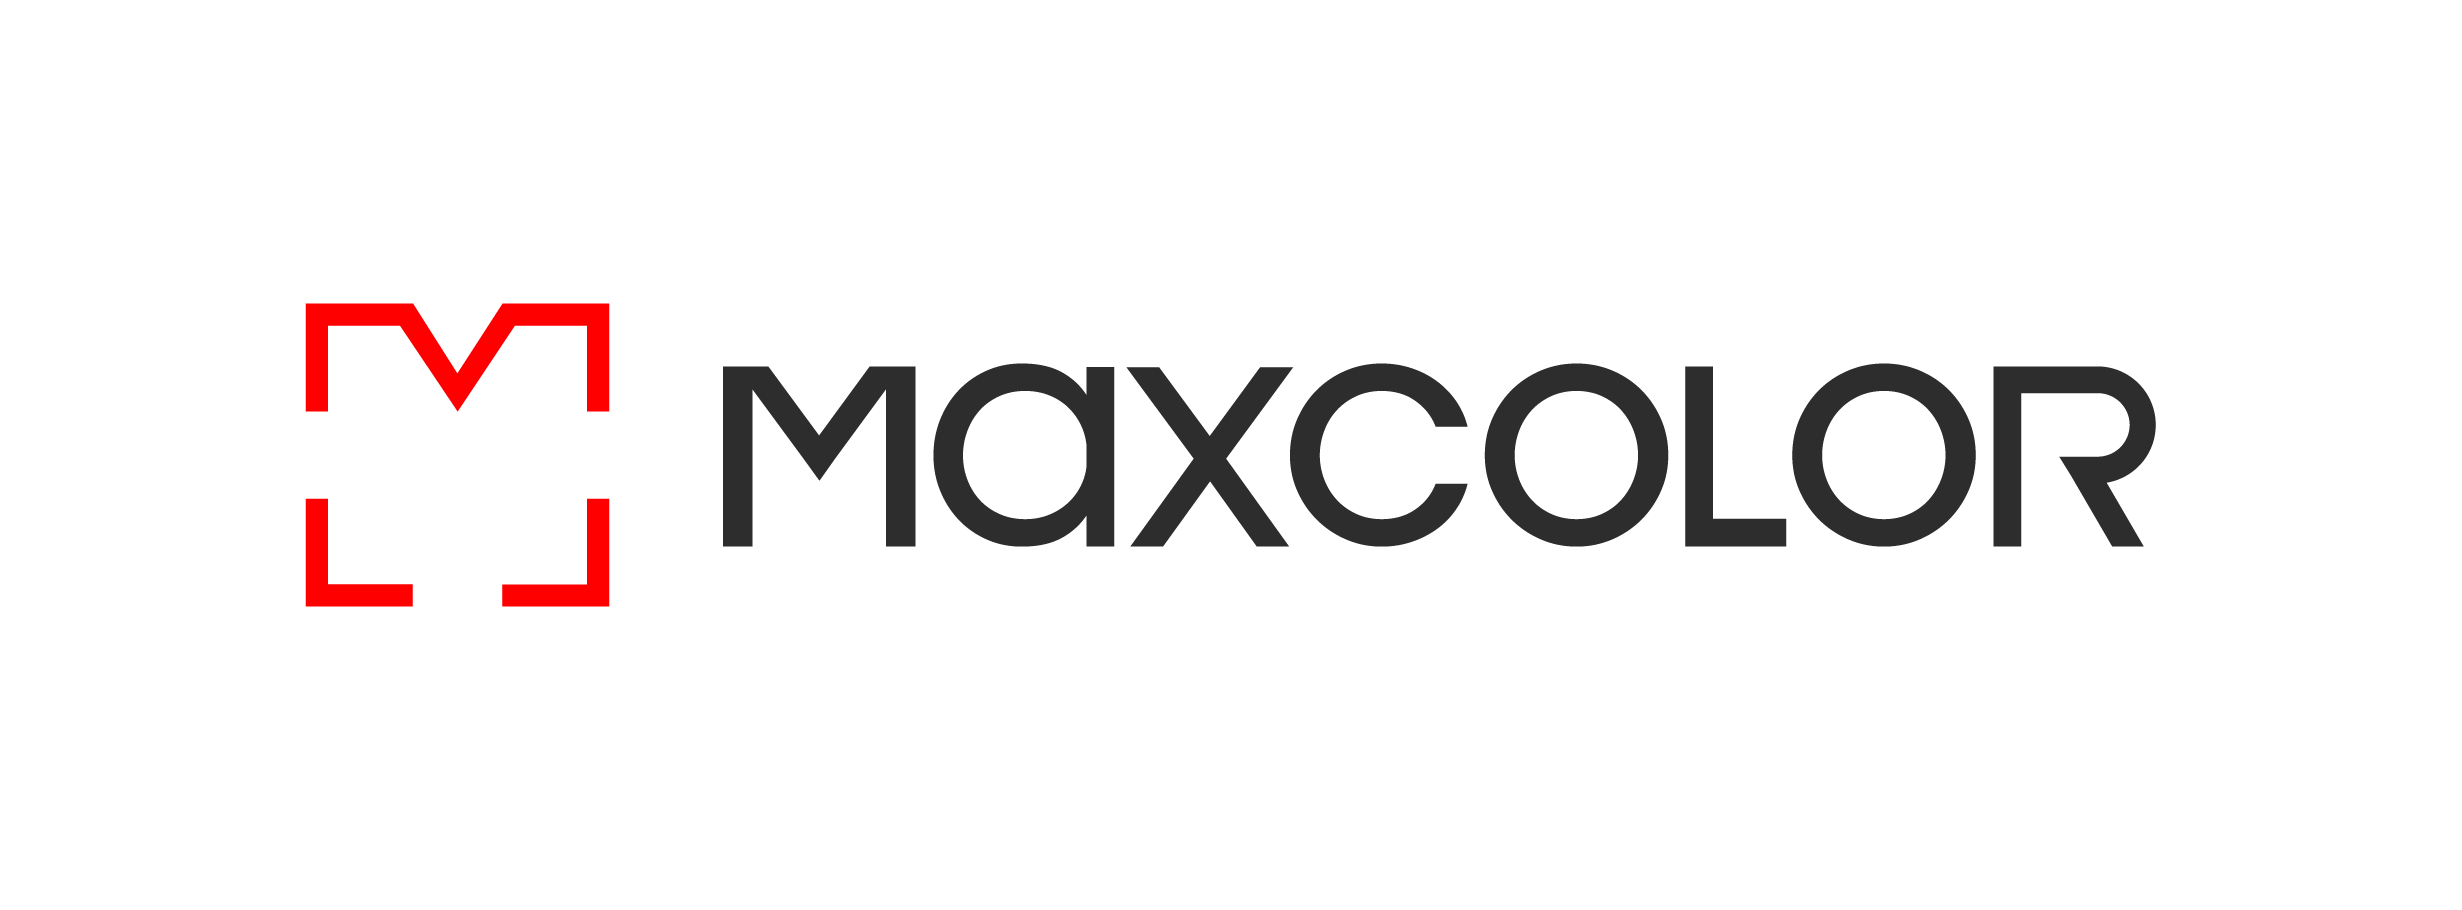 Maxcolor